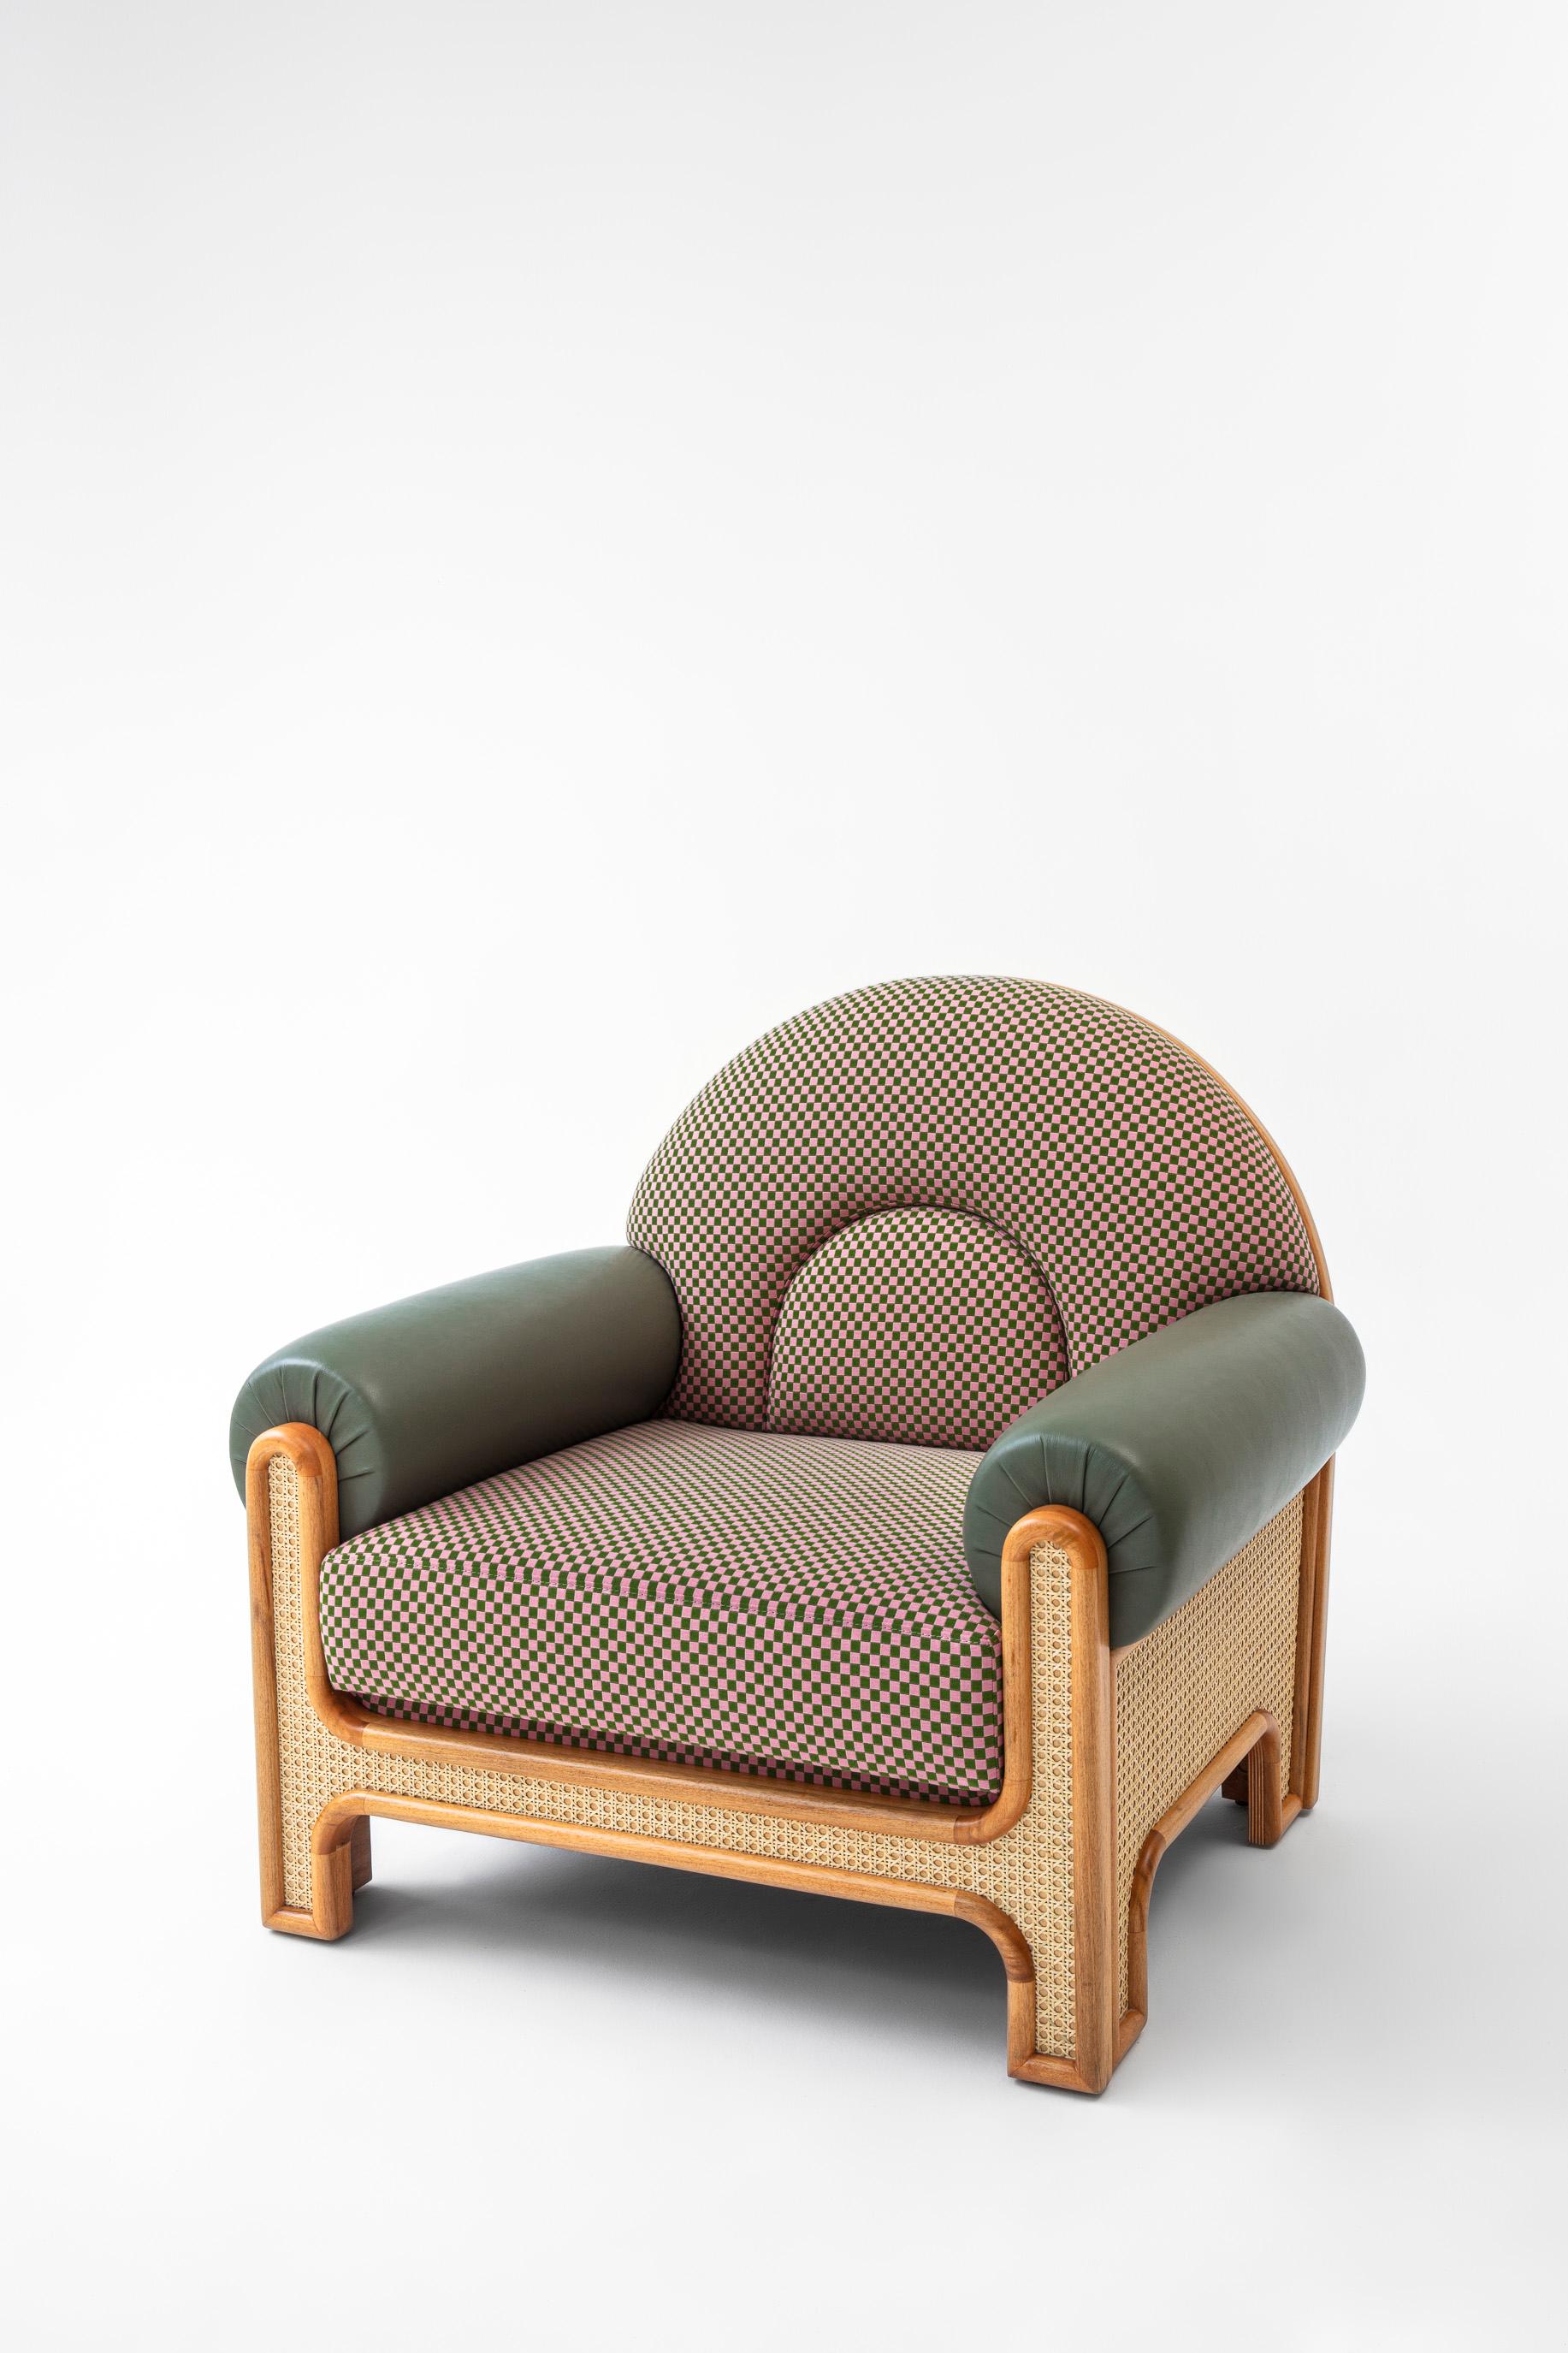 Der N-gene Sessel ist eine Neuinterpretation eines Sessels, den Merves Onkel, der Innenarchitekt Engin, in den 1970er Jahren entworfen hat. Der N-Gene wurde mit Caning überarbeitet und ist mit einem karierten Stoffbezug und schwarzen Lederarmen